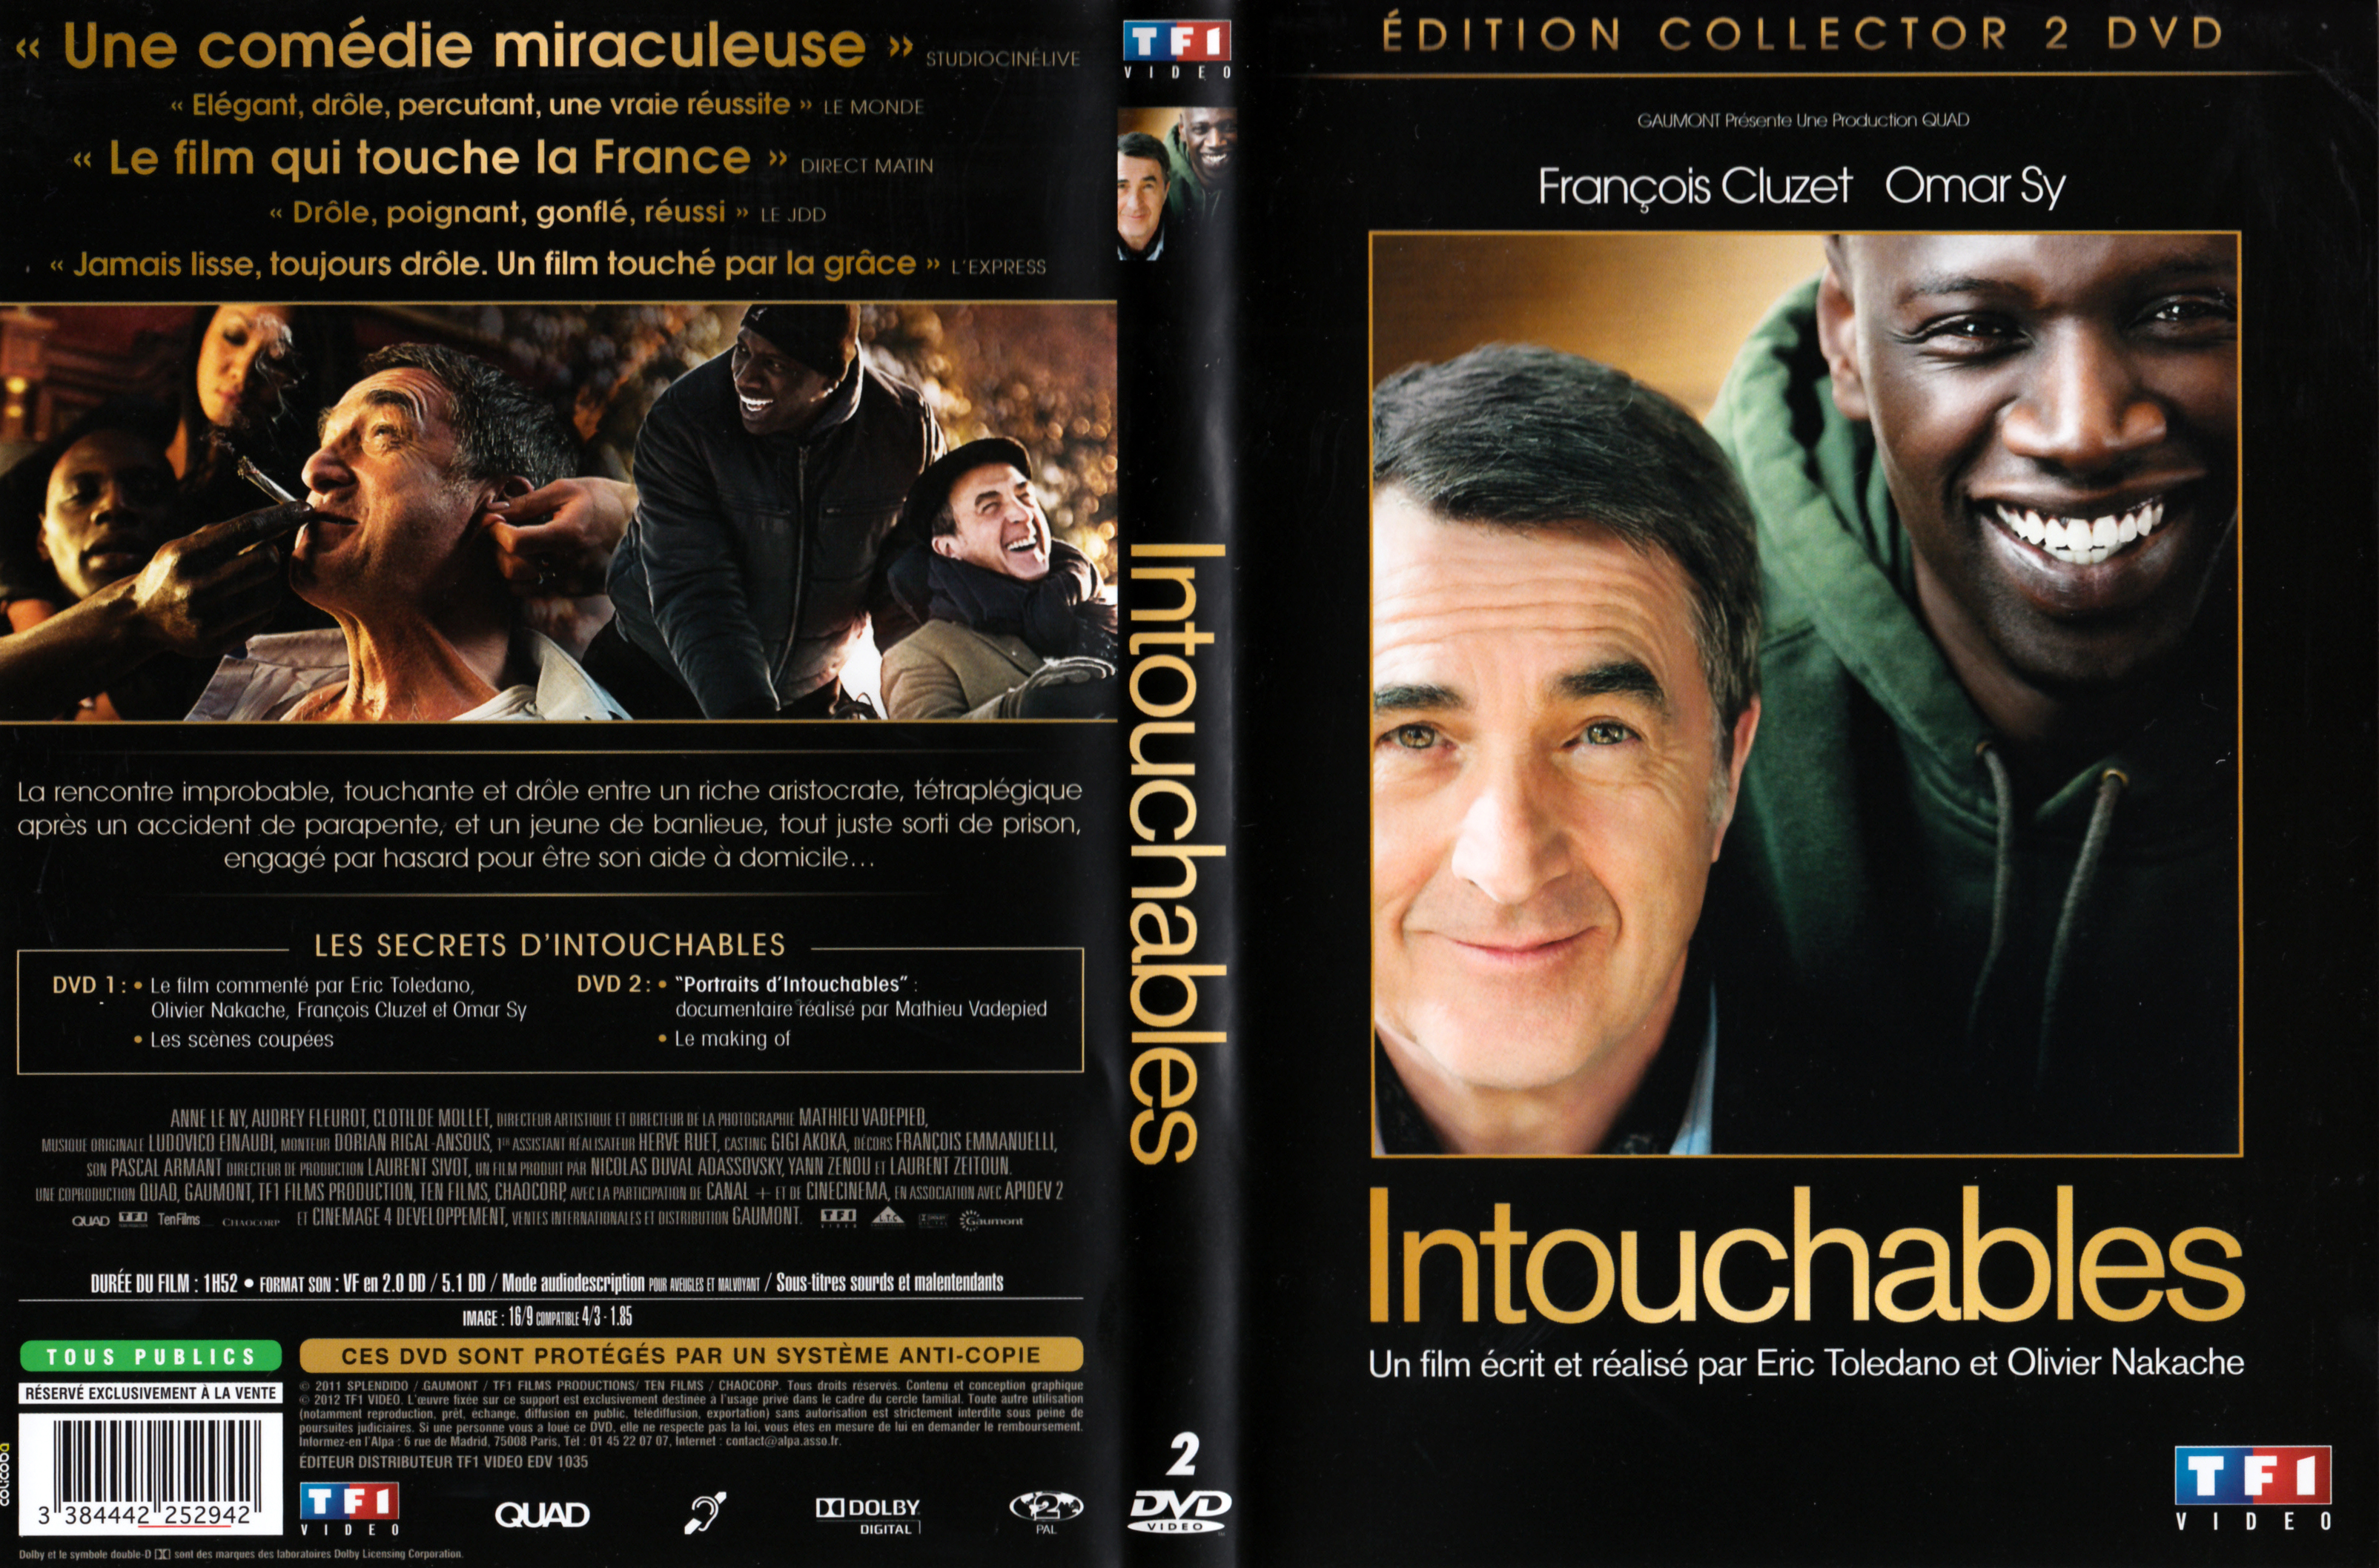 Jaquette DVD Intouchables v3